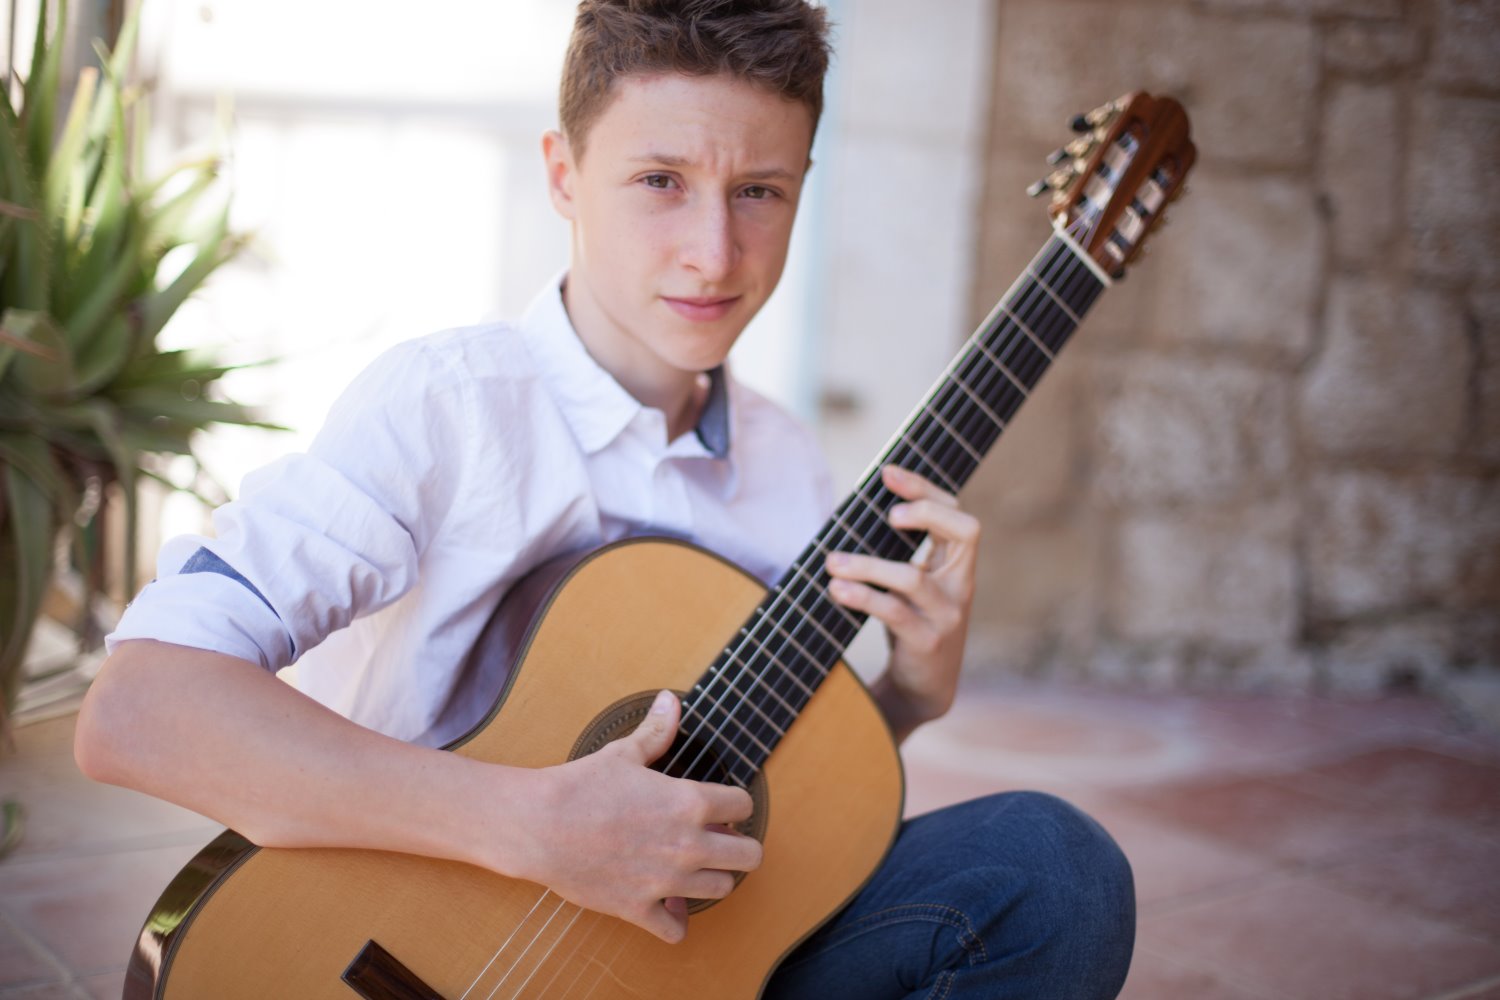 מיכאל בוקובסקי, תלמיד אקדמא והזוכה בתחרות הבינלאומית לגיטרה אקוסטית באיטליה | צילום: אסתר בוקובסקי